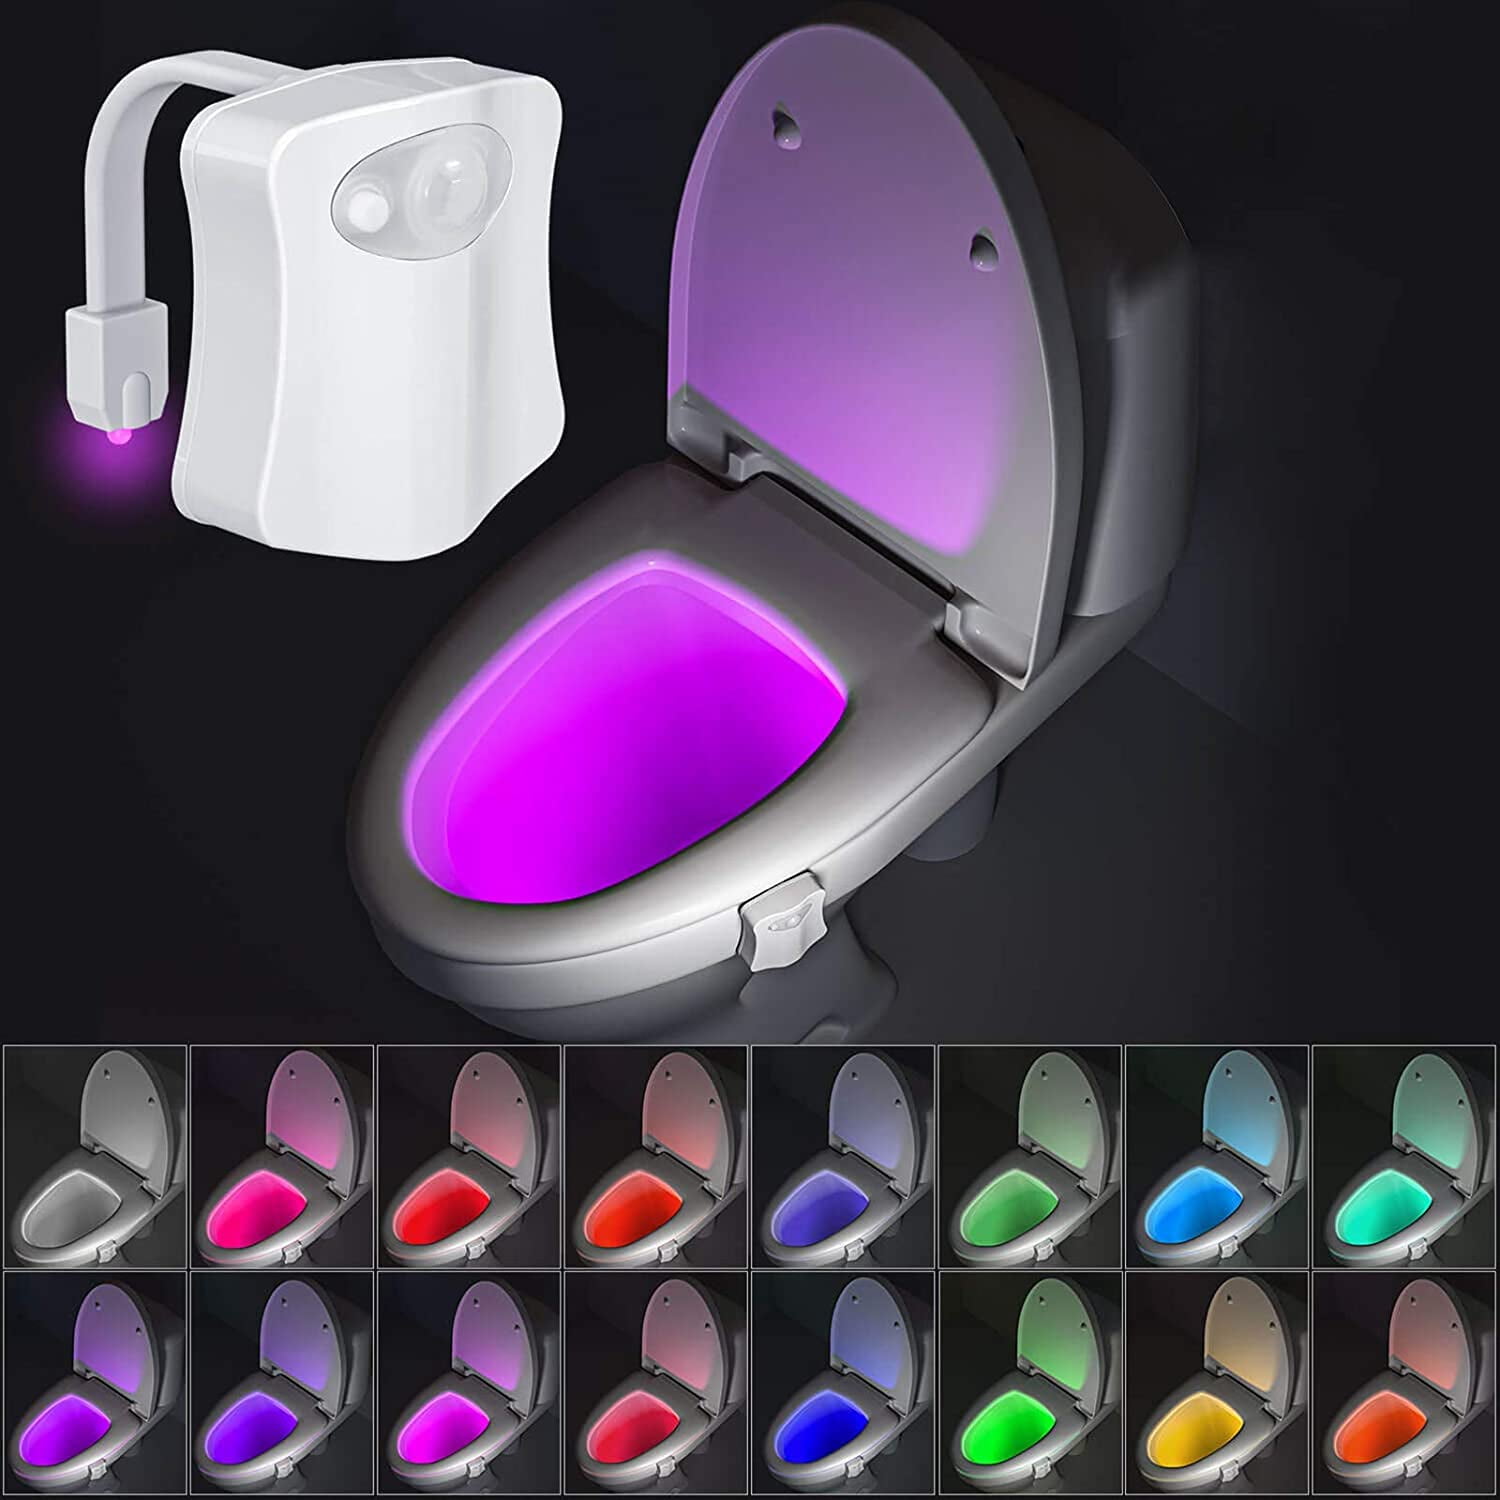 16 Color Motion Detection Sensor Led Nig 4 Pack Rechargeable Toilet Bowl Lights 